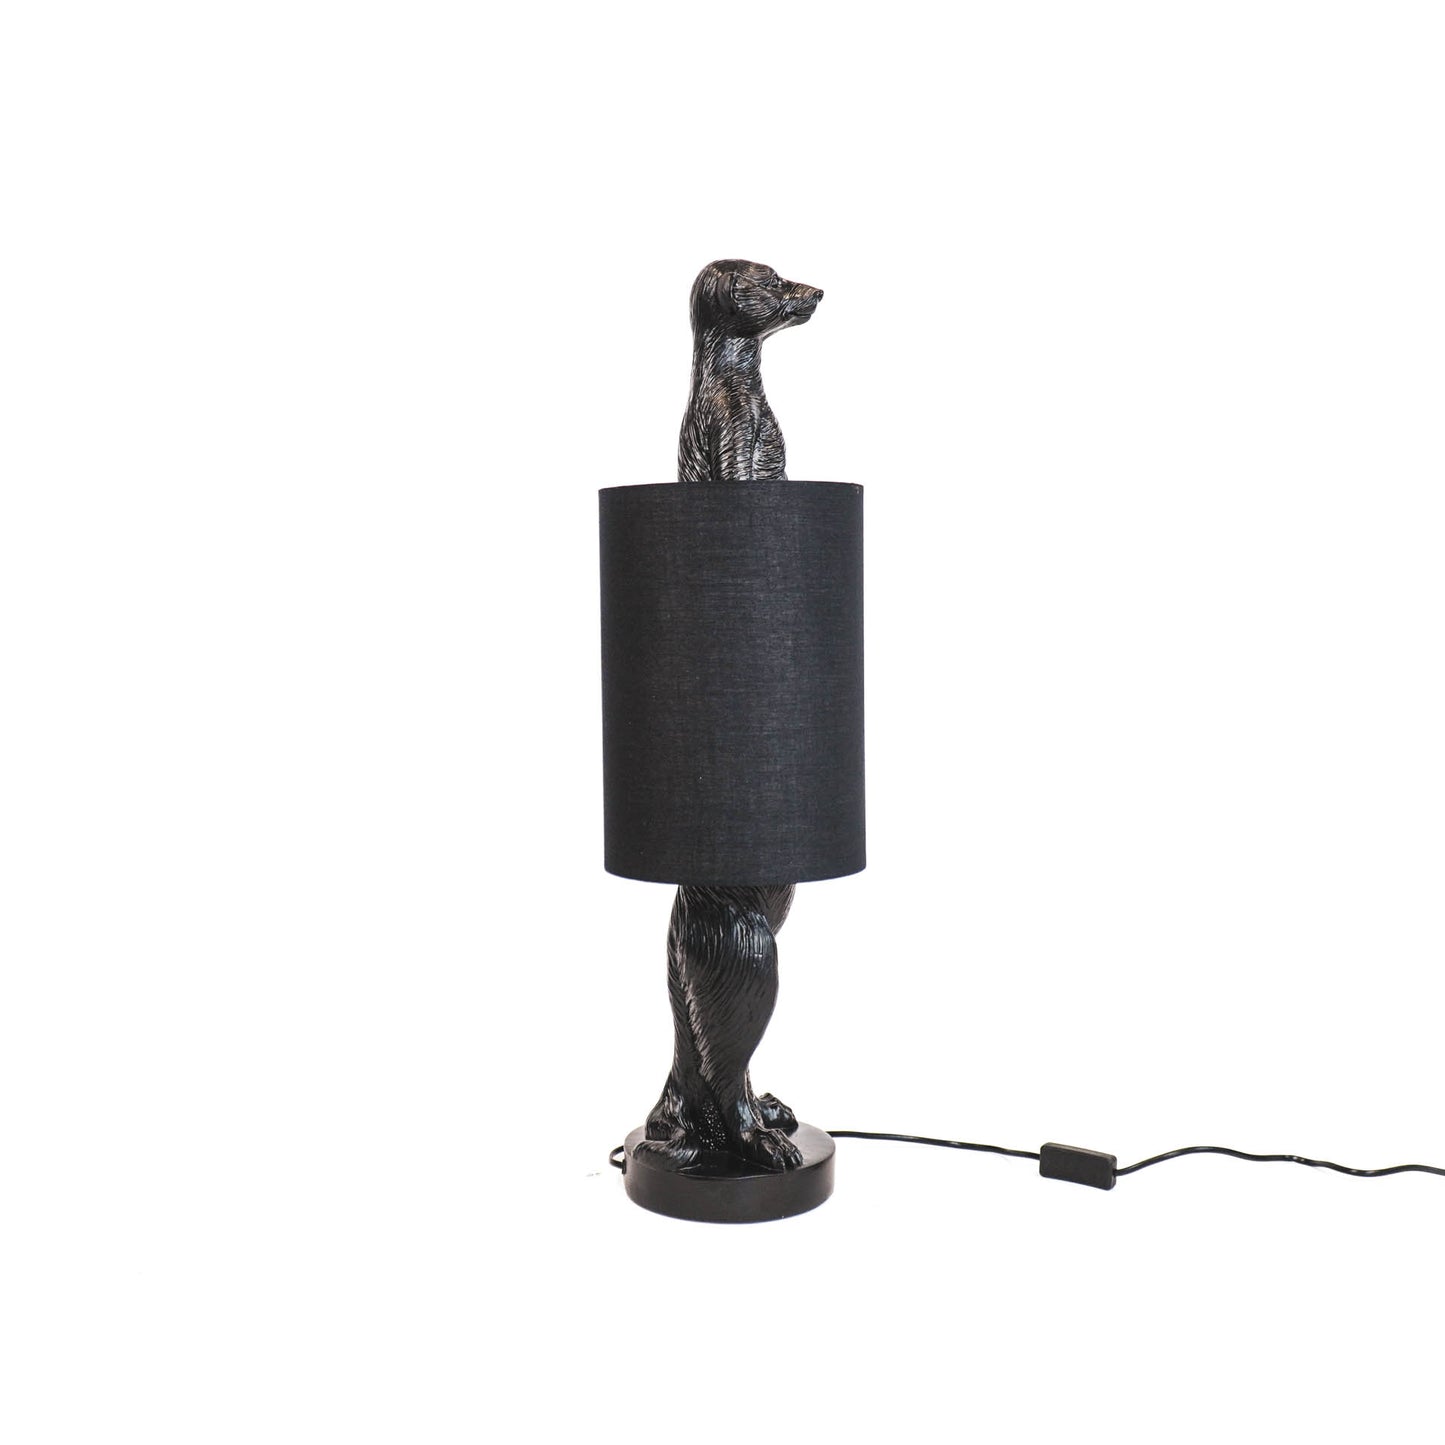 HV Meerkat Lamp- Black incl lampshade